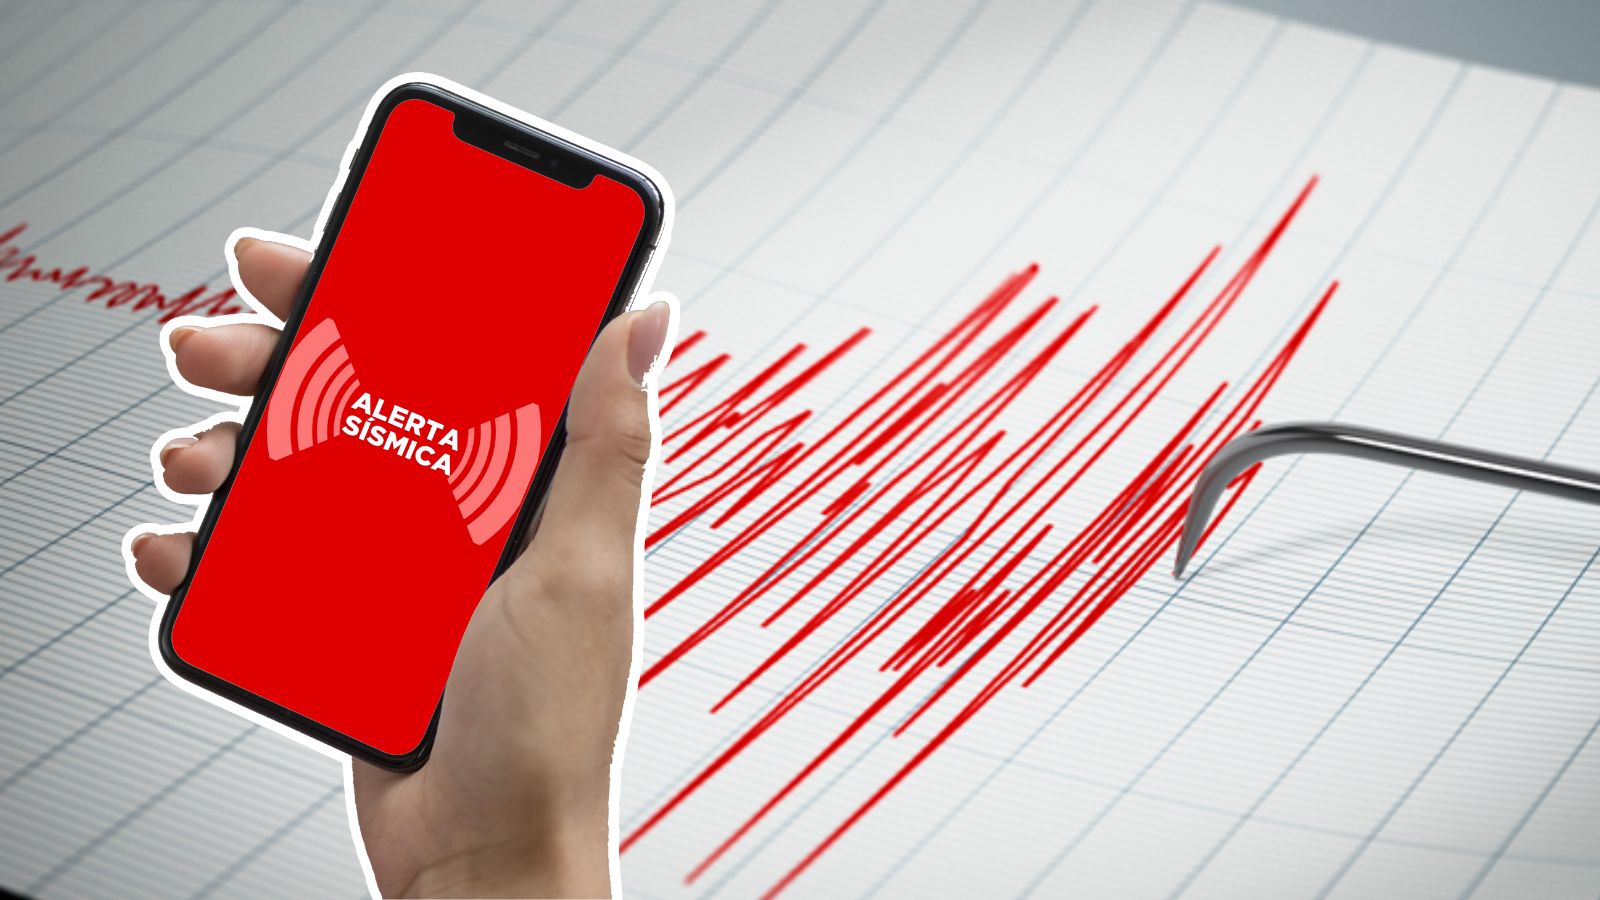 Alerta sísmica en celulares llega en marzo a México